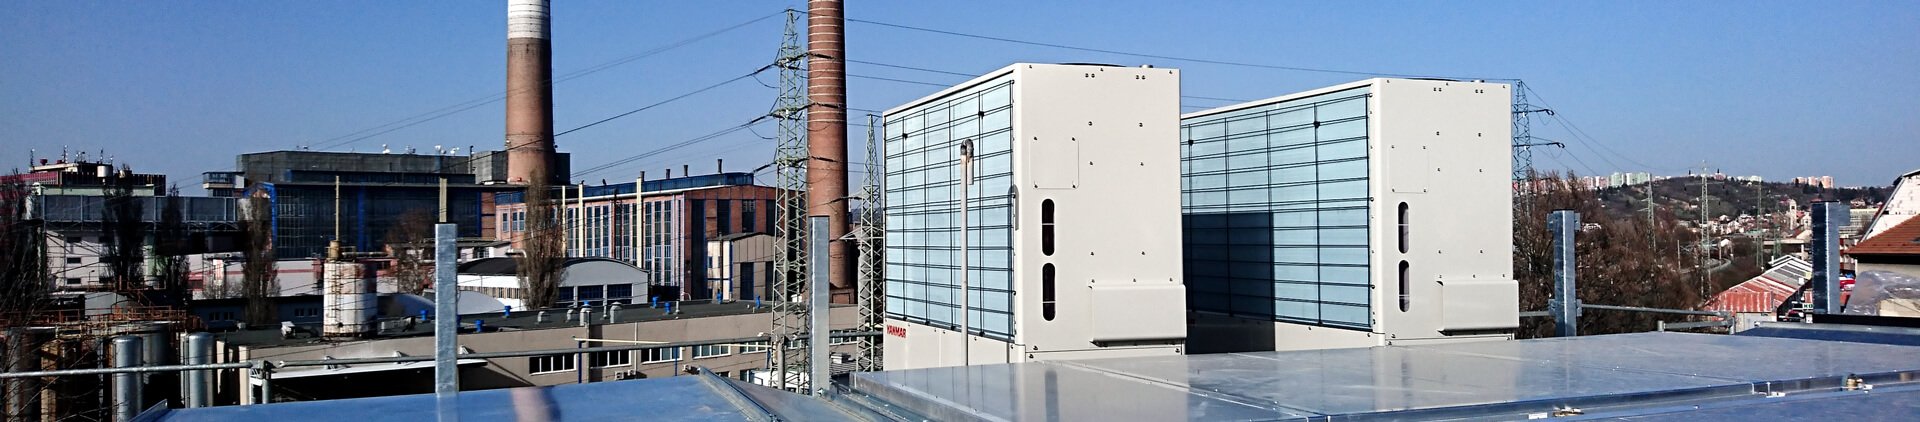 Plynové tepelné čerpadlo pro vytápění a chlazení komerční budovy